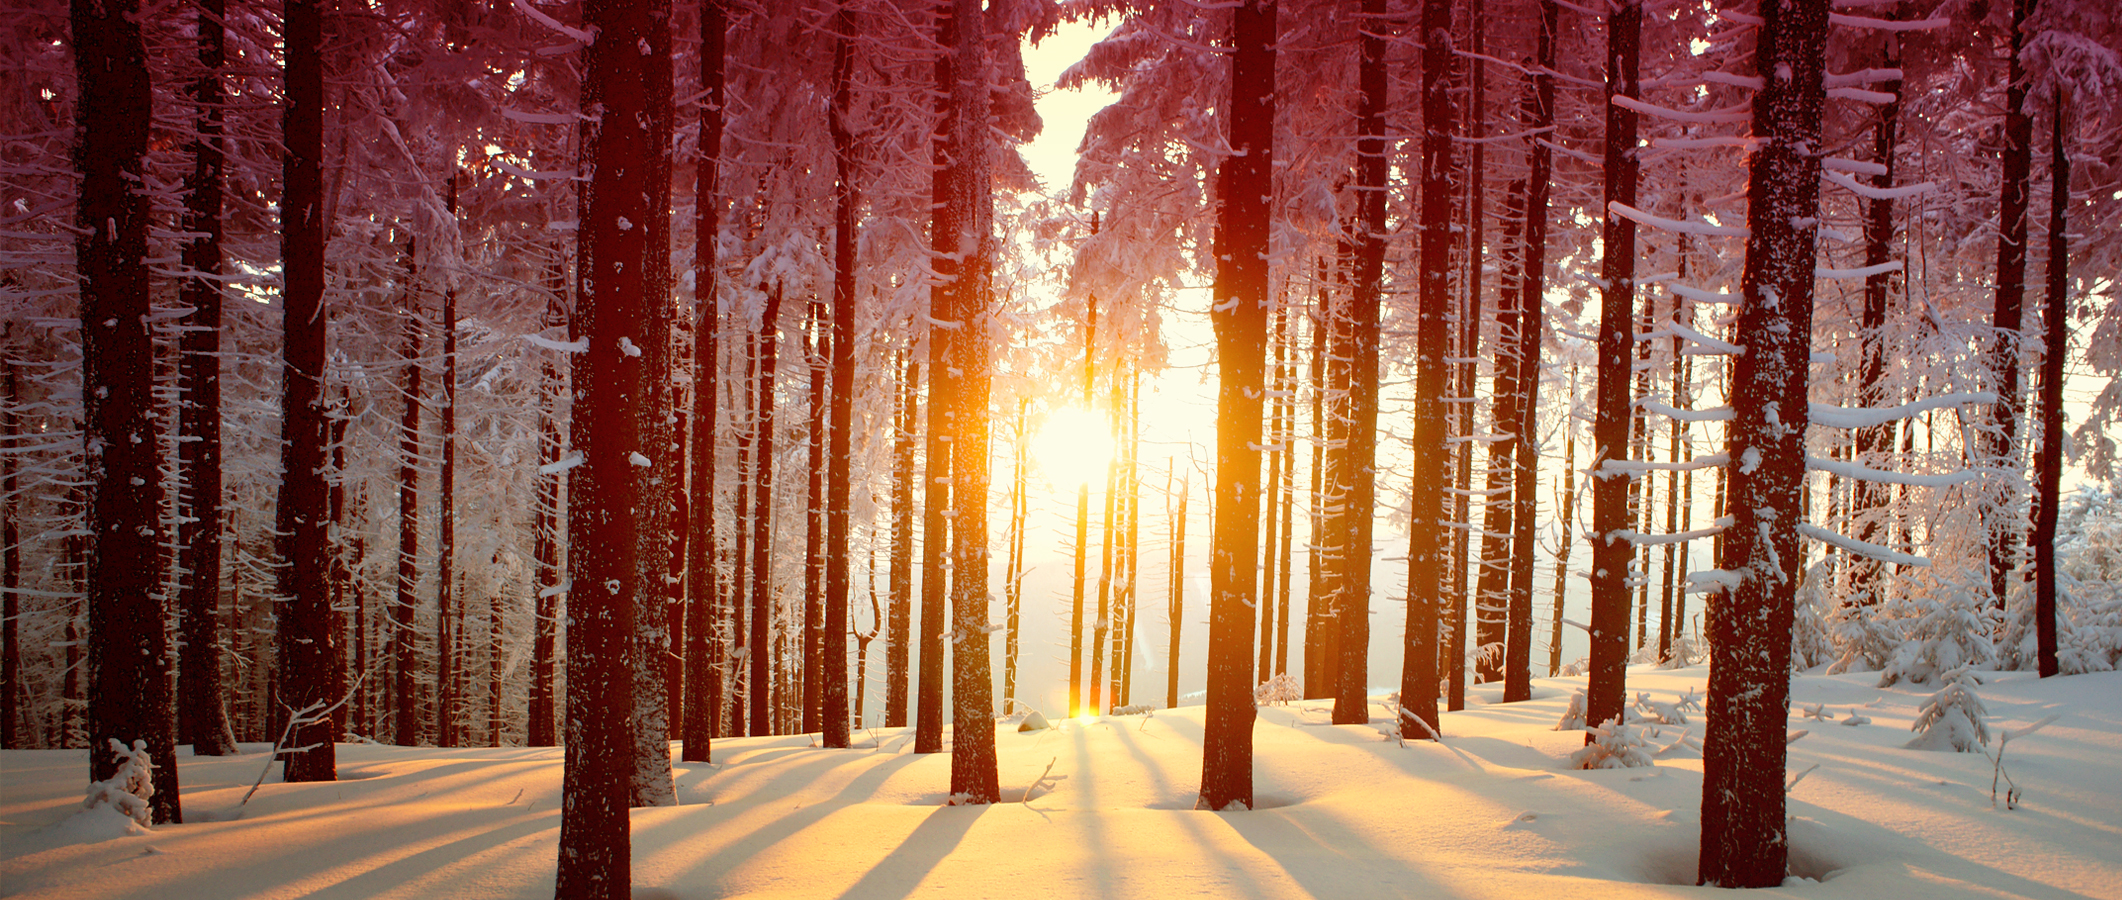 Photographie d'un boisé en hiver et où pénètrent des percées de soleil